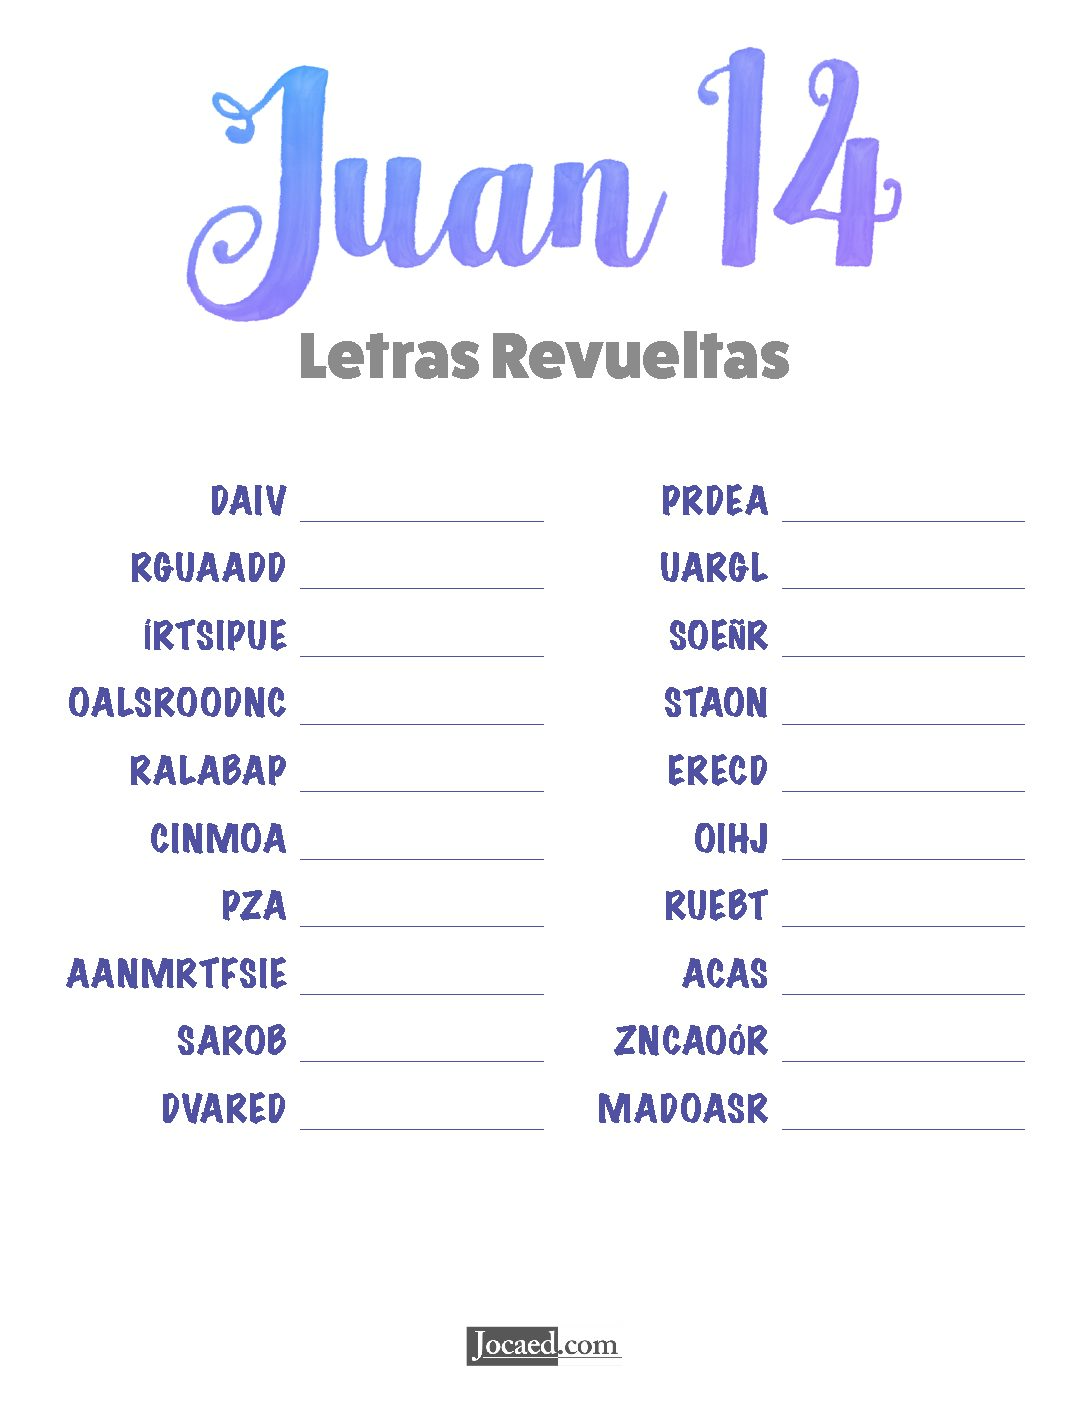 Juan 14 - Letras Revueltas